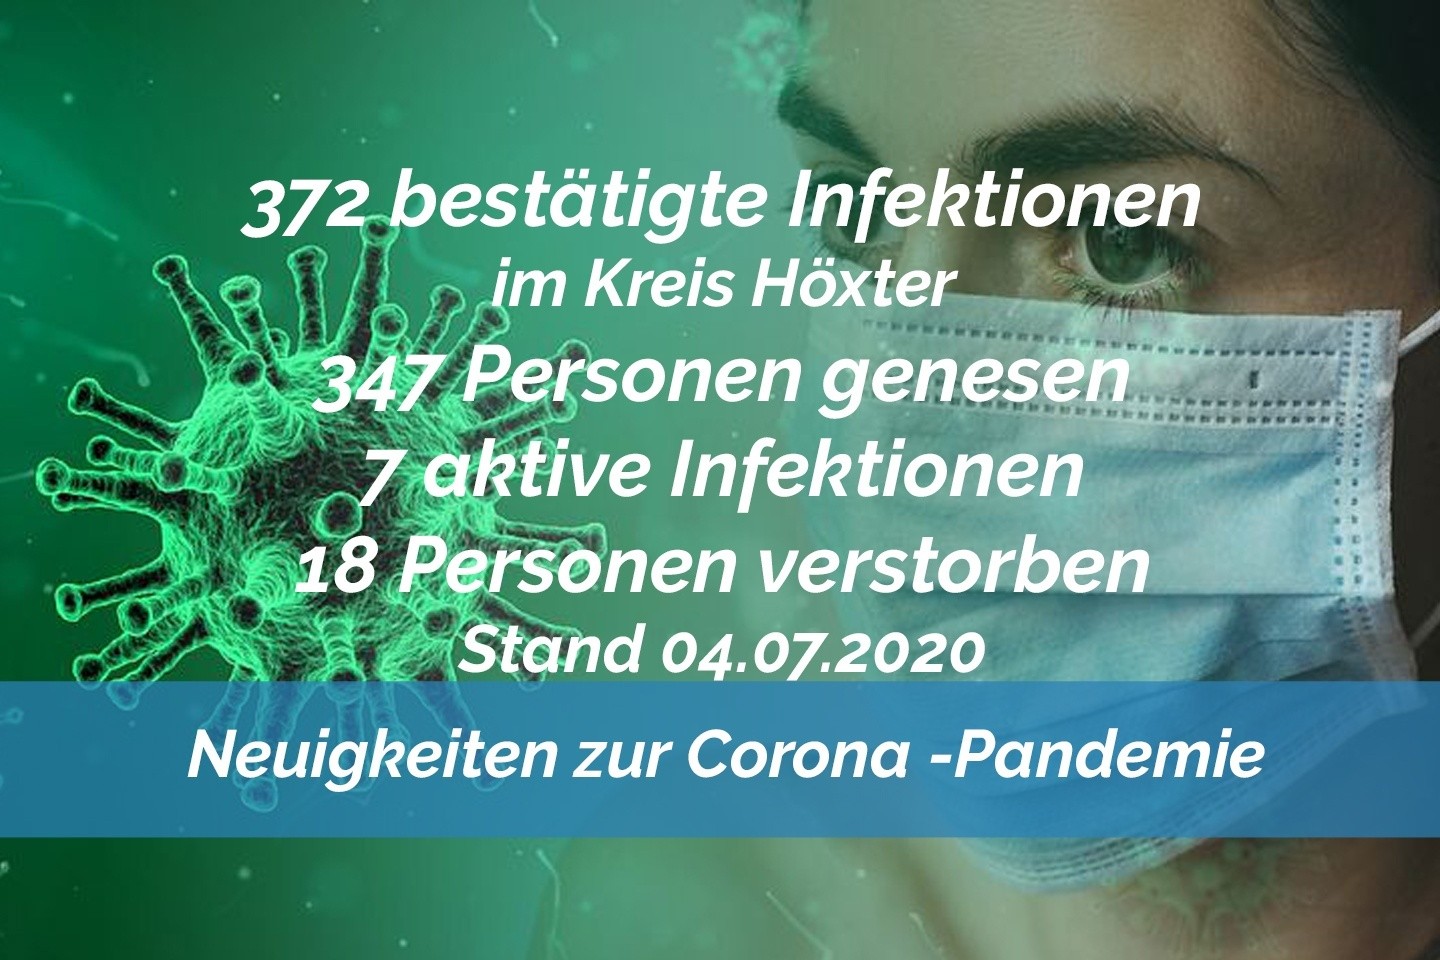 Update vom 04. Juli: 372 bestätigte Infektionen mit dem neuen Coronavirus im Kreis Höxter